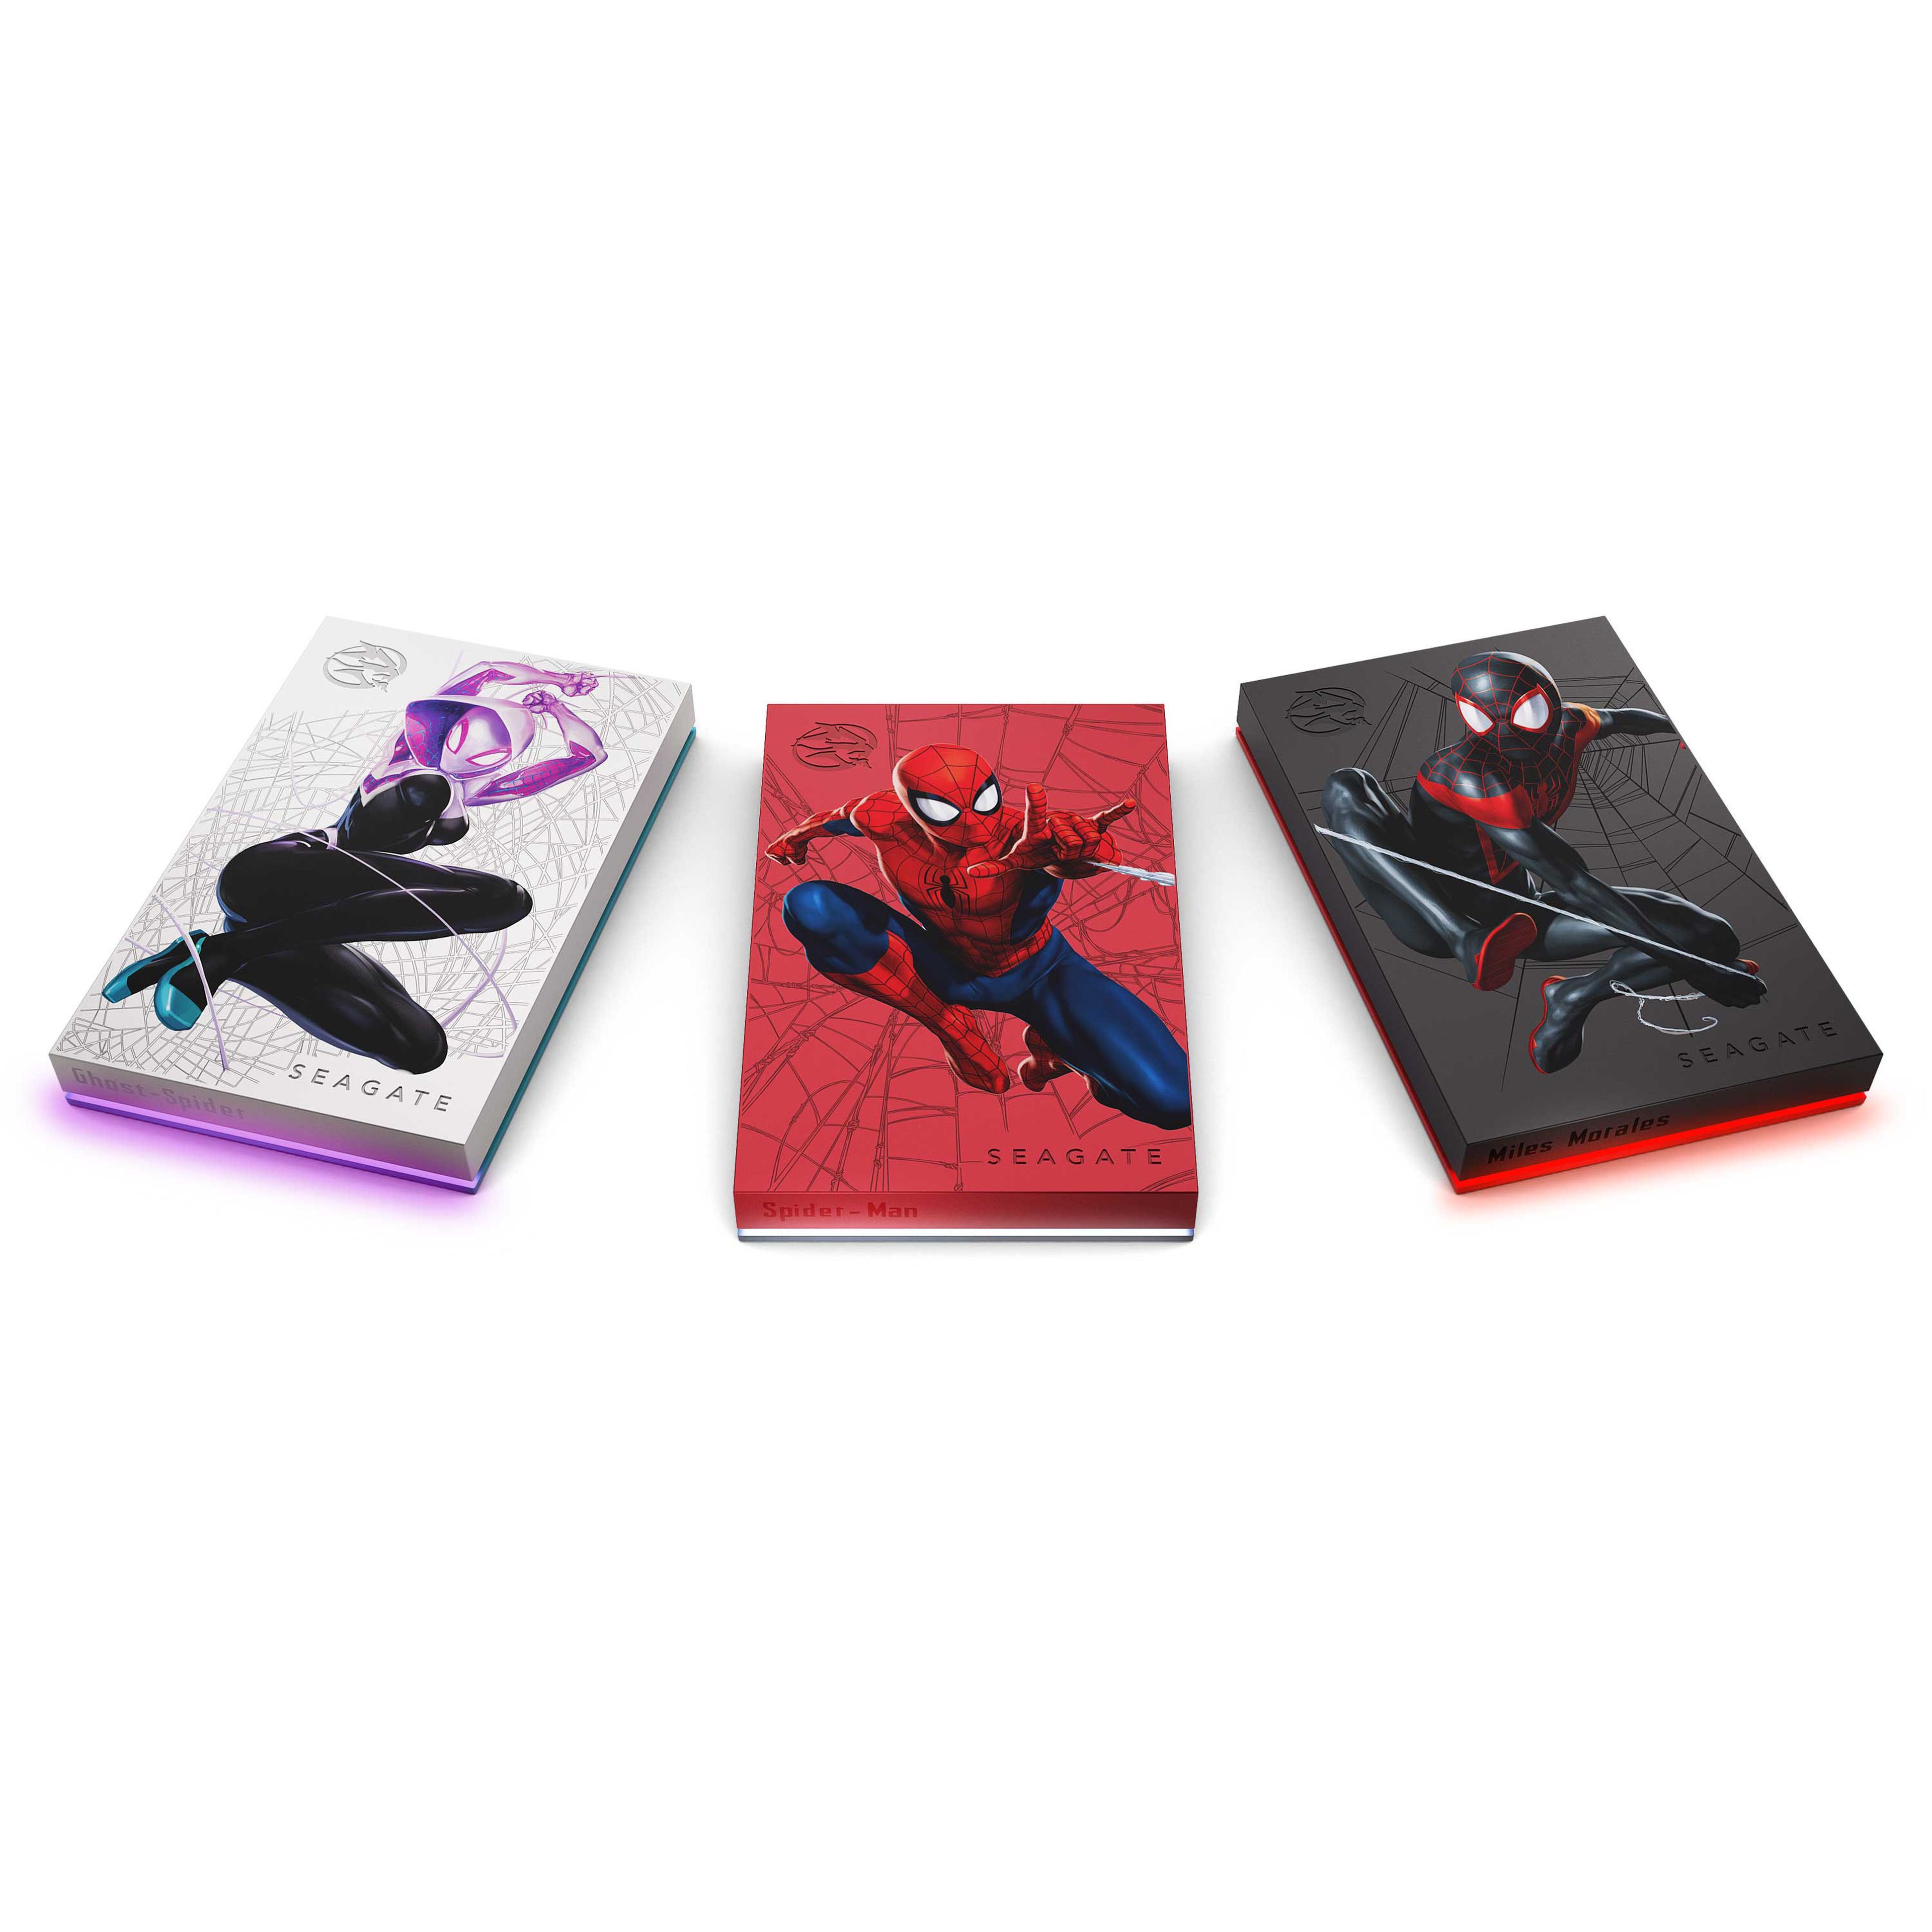 Spider Ghost, Spider-Man y Miles Morales son los tres superhéroes que protagonizan esta edición especial.